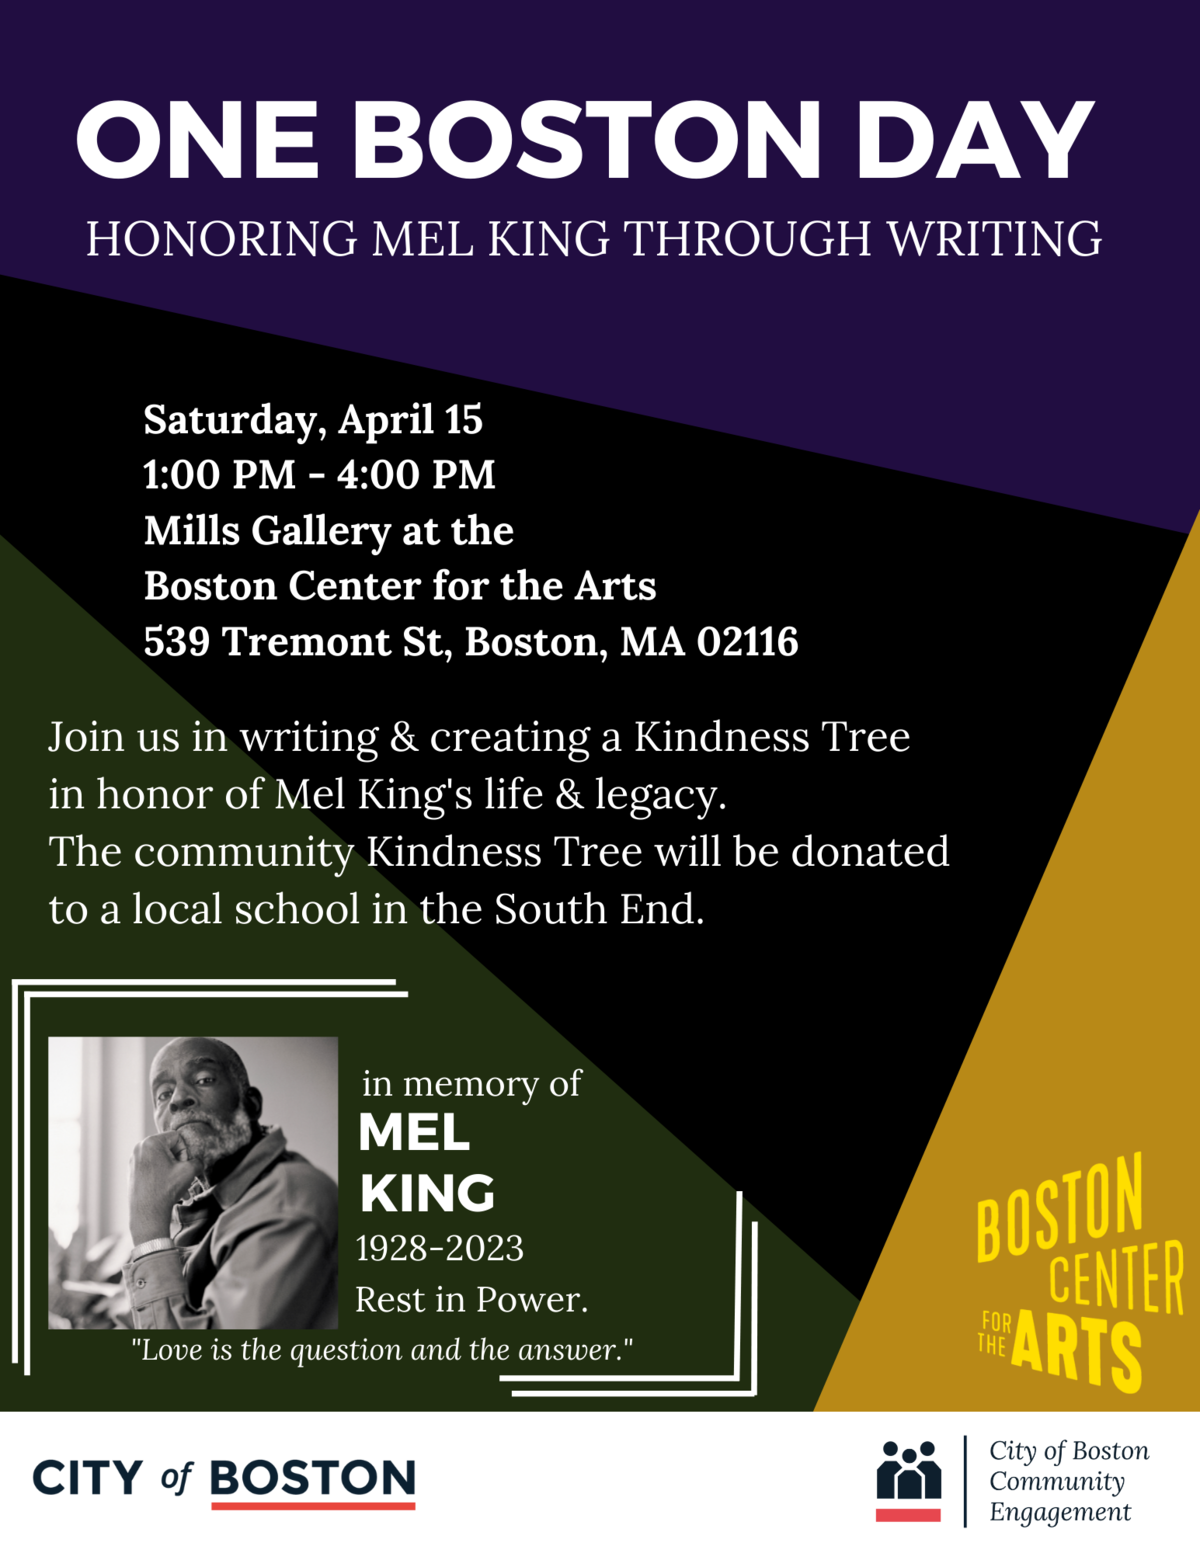 Mel King One Boston Day event flyer. Information on boston.gov/one-boston